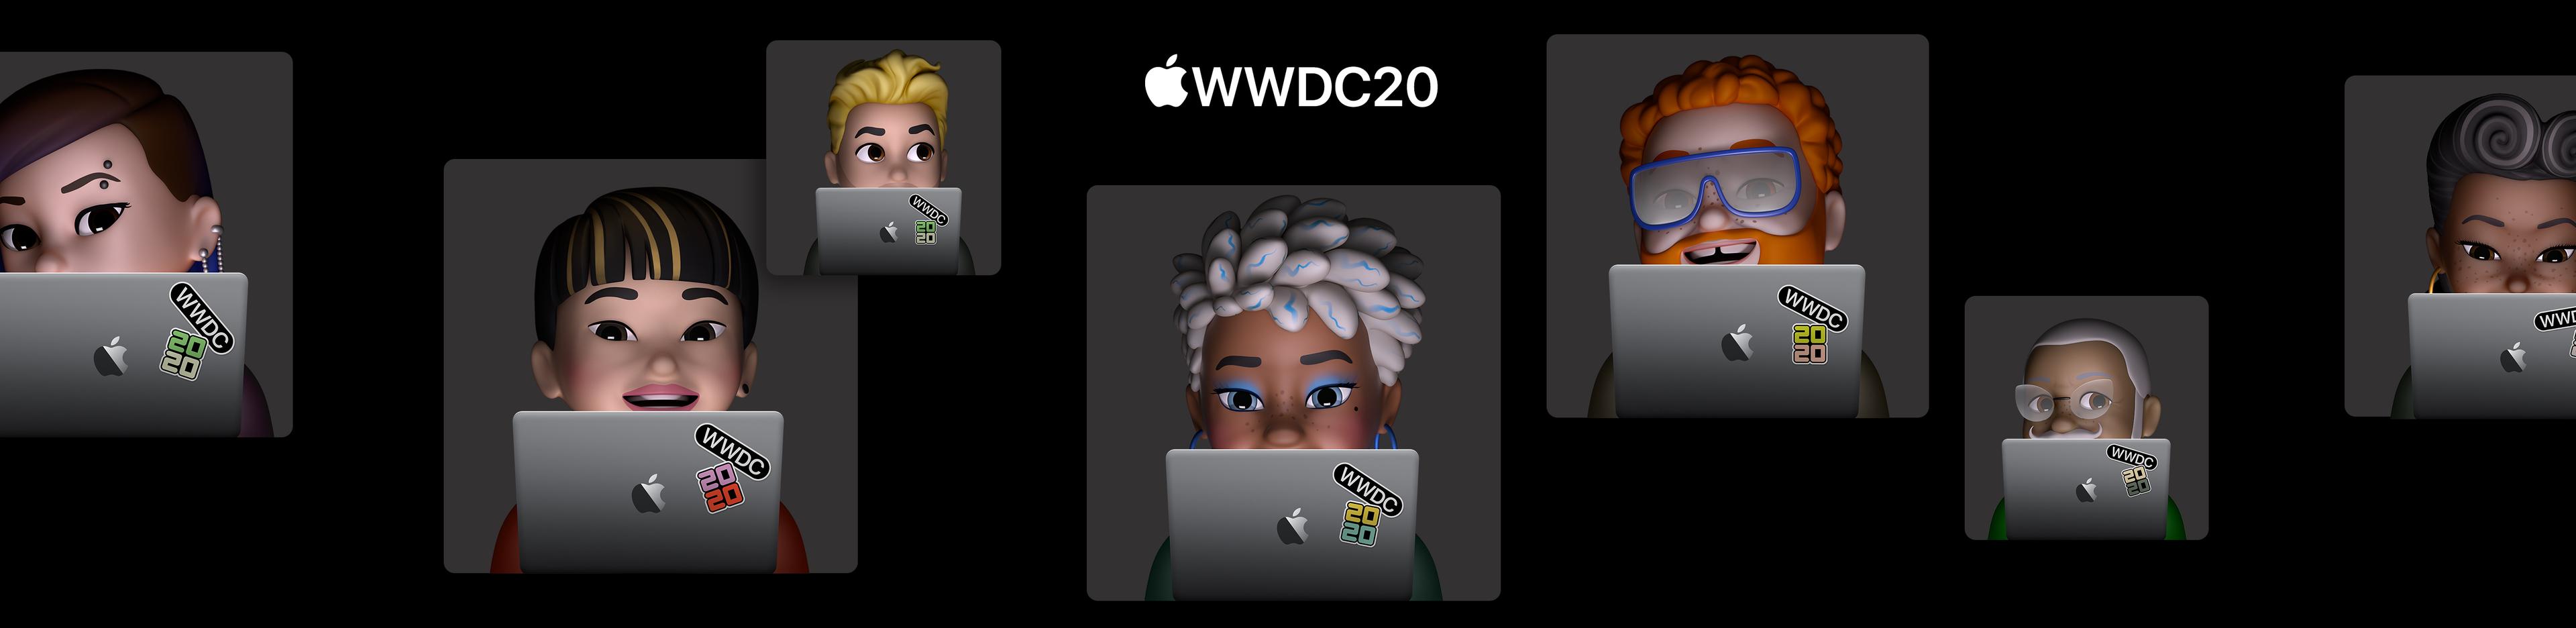 WWDC20 alkalmazásfejlesztő szemmel